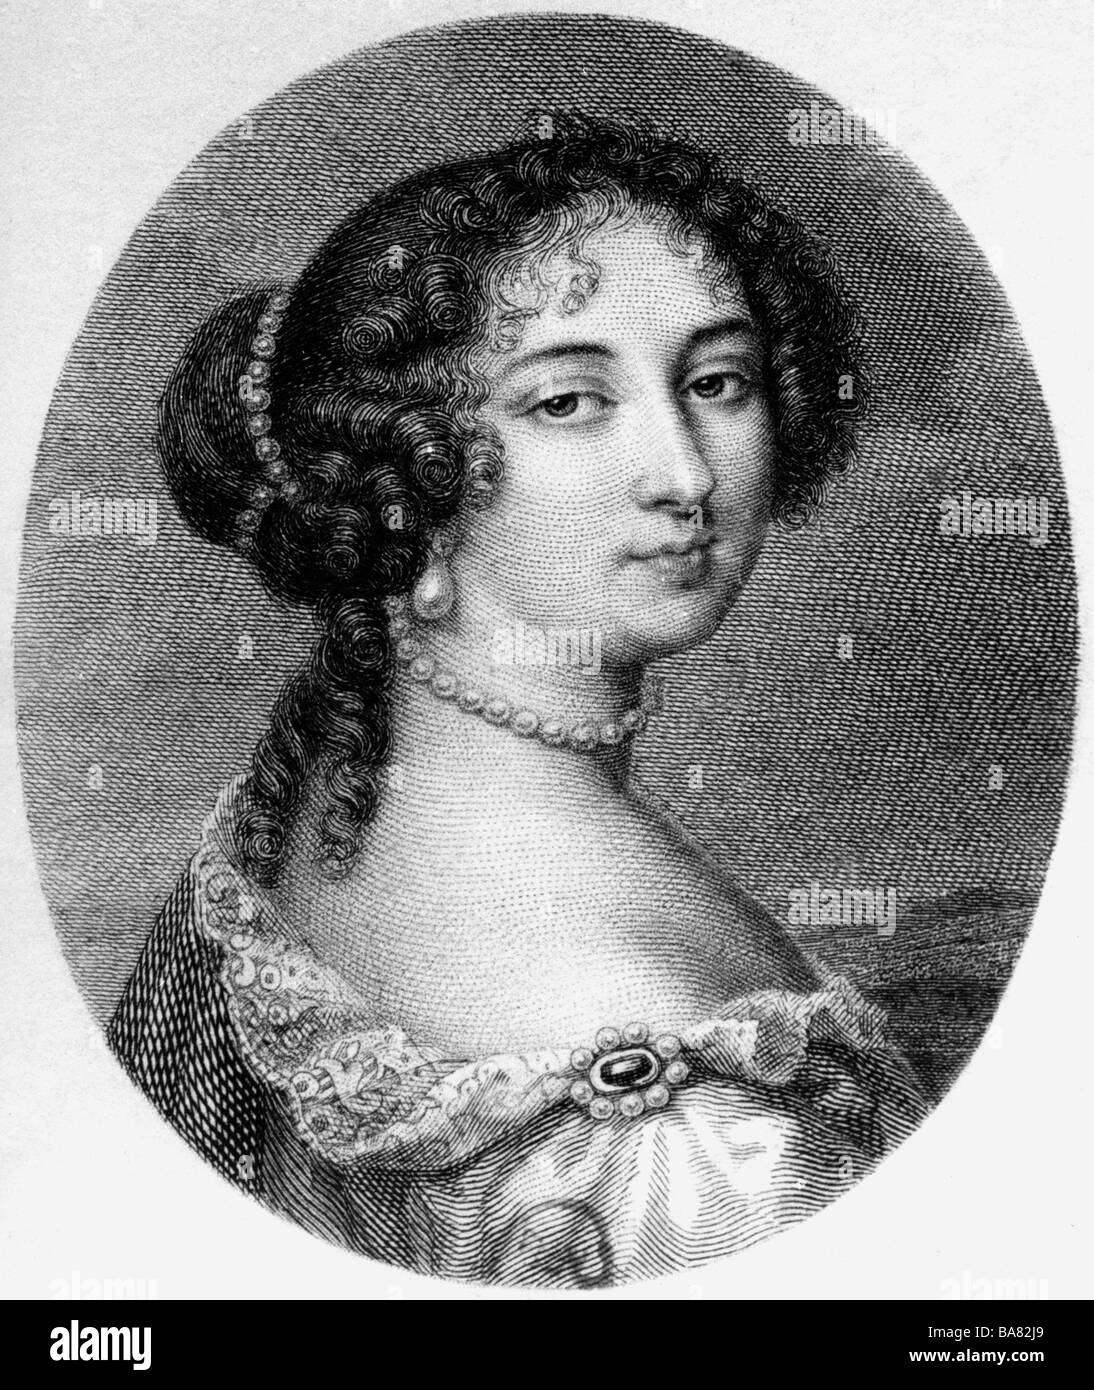 Maintenon, Francoise d' Augigne, Marquise de, 27.11.1635 - 15.4.1719, signora della corte francese, ritratto, incisione in legno, 19th secolo, , Foto Stock